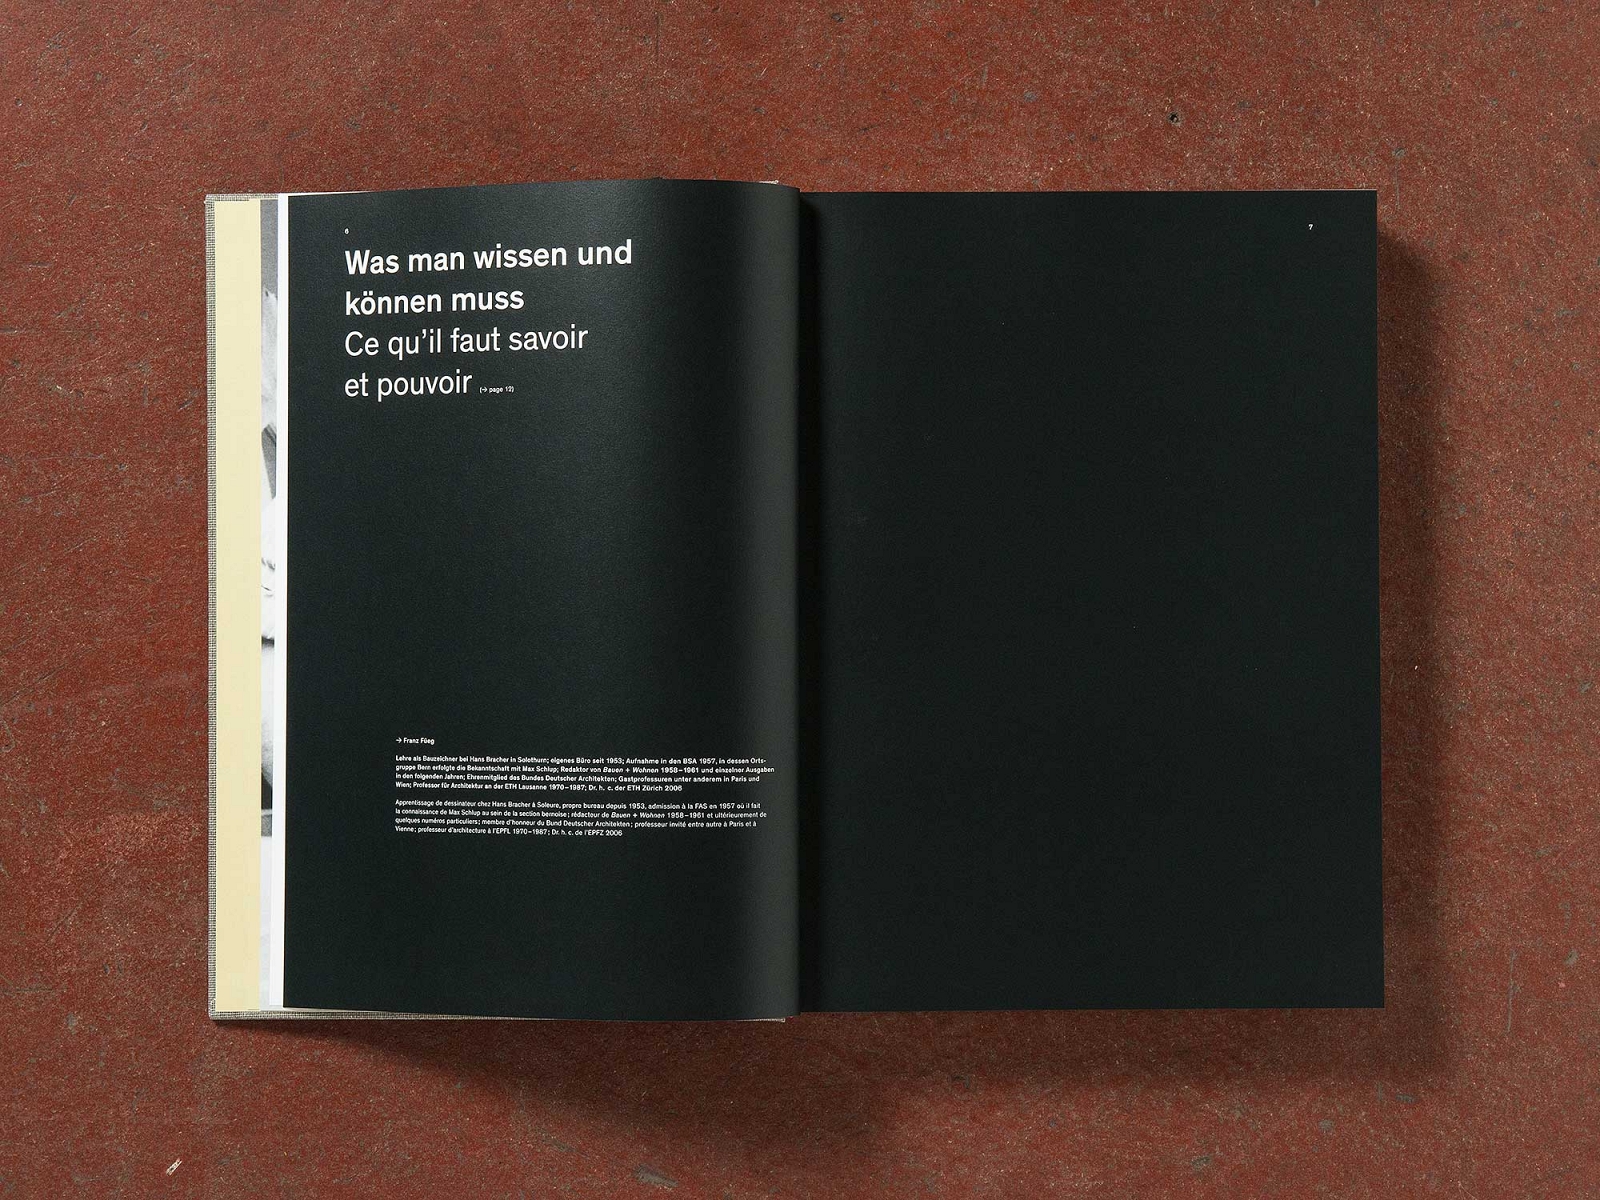 Buchgestaltung / book design Max Schlup, Architekt